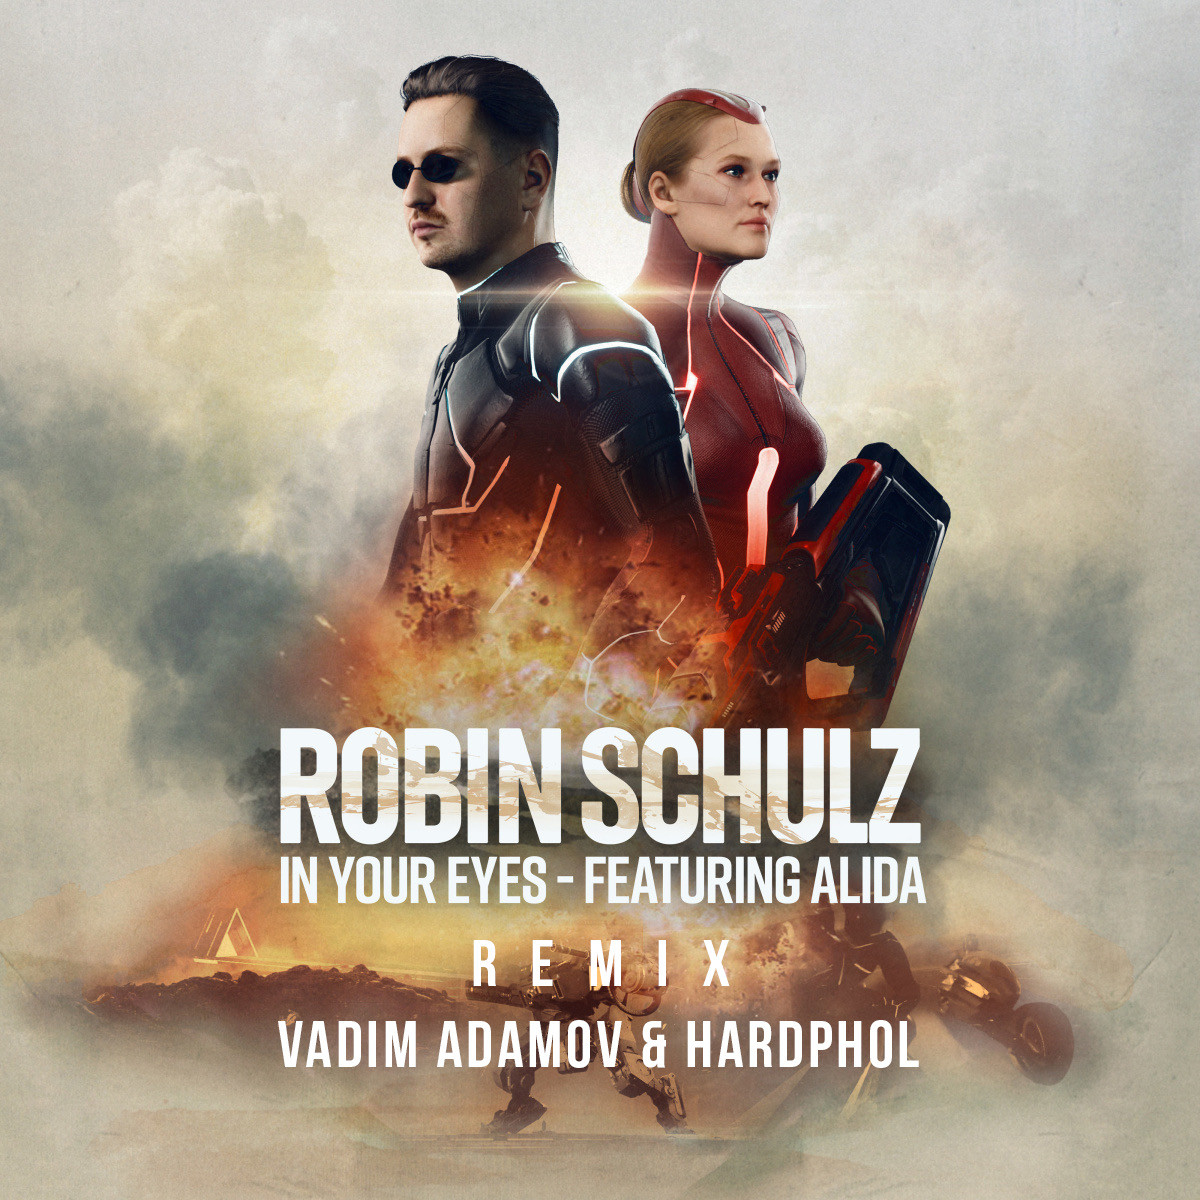 Robin Schulz Feat Alida In Your Eyes Vadim Adamov Hardphol Remix Radio Edit Hardphol